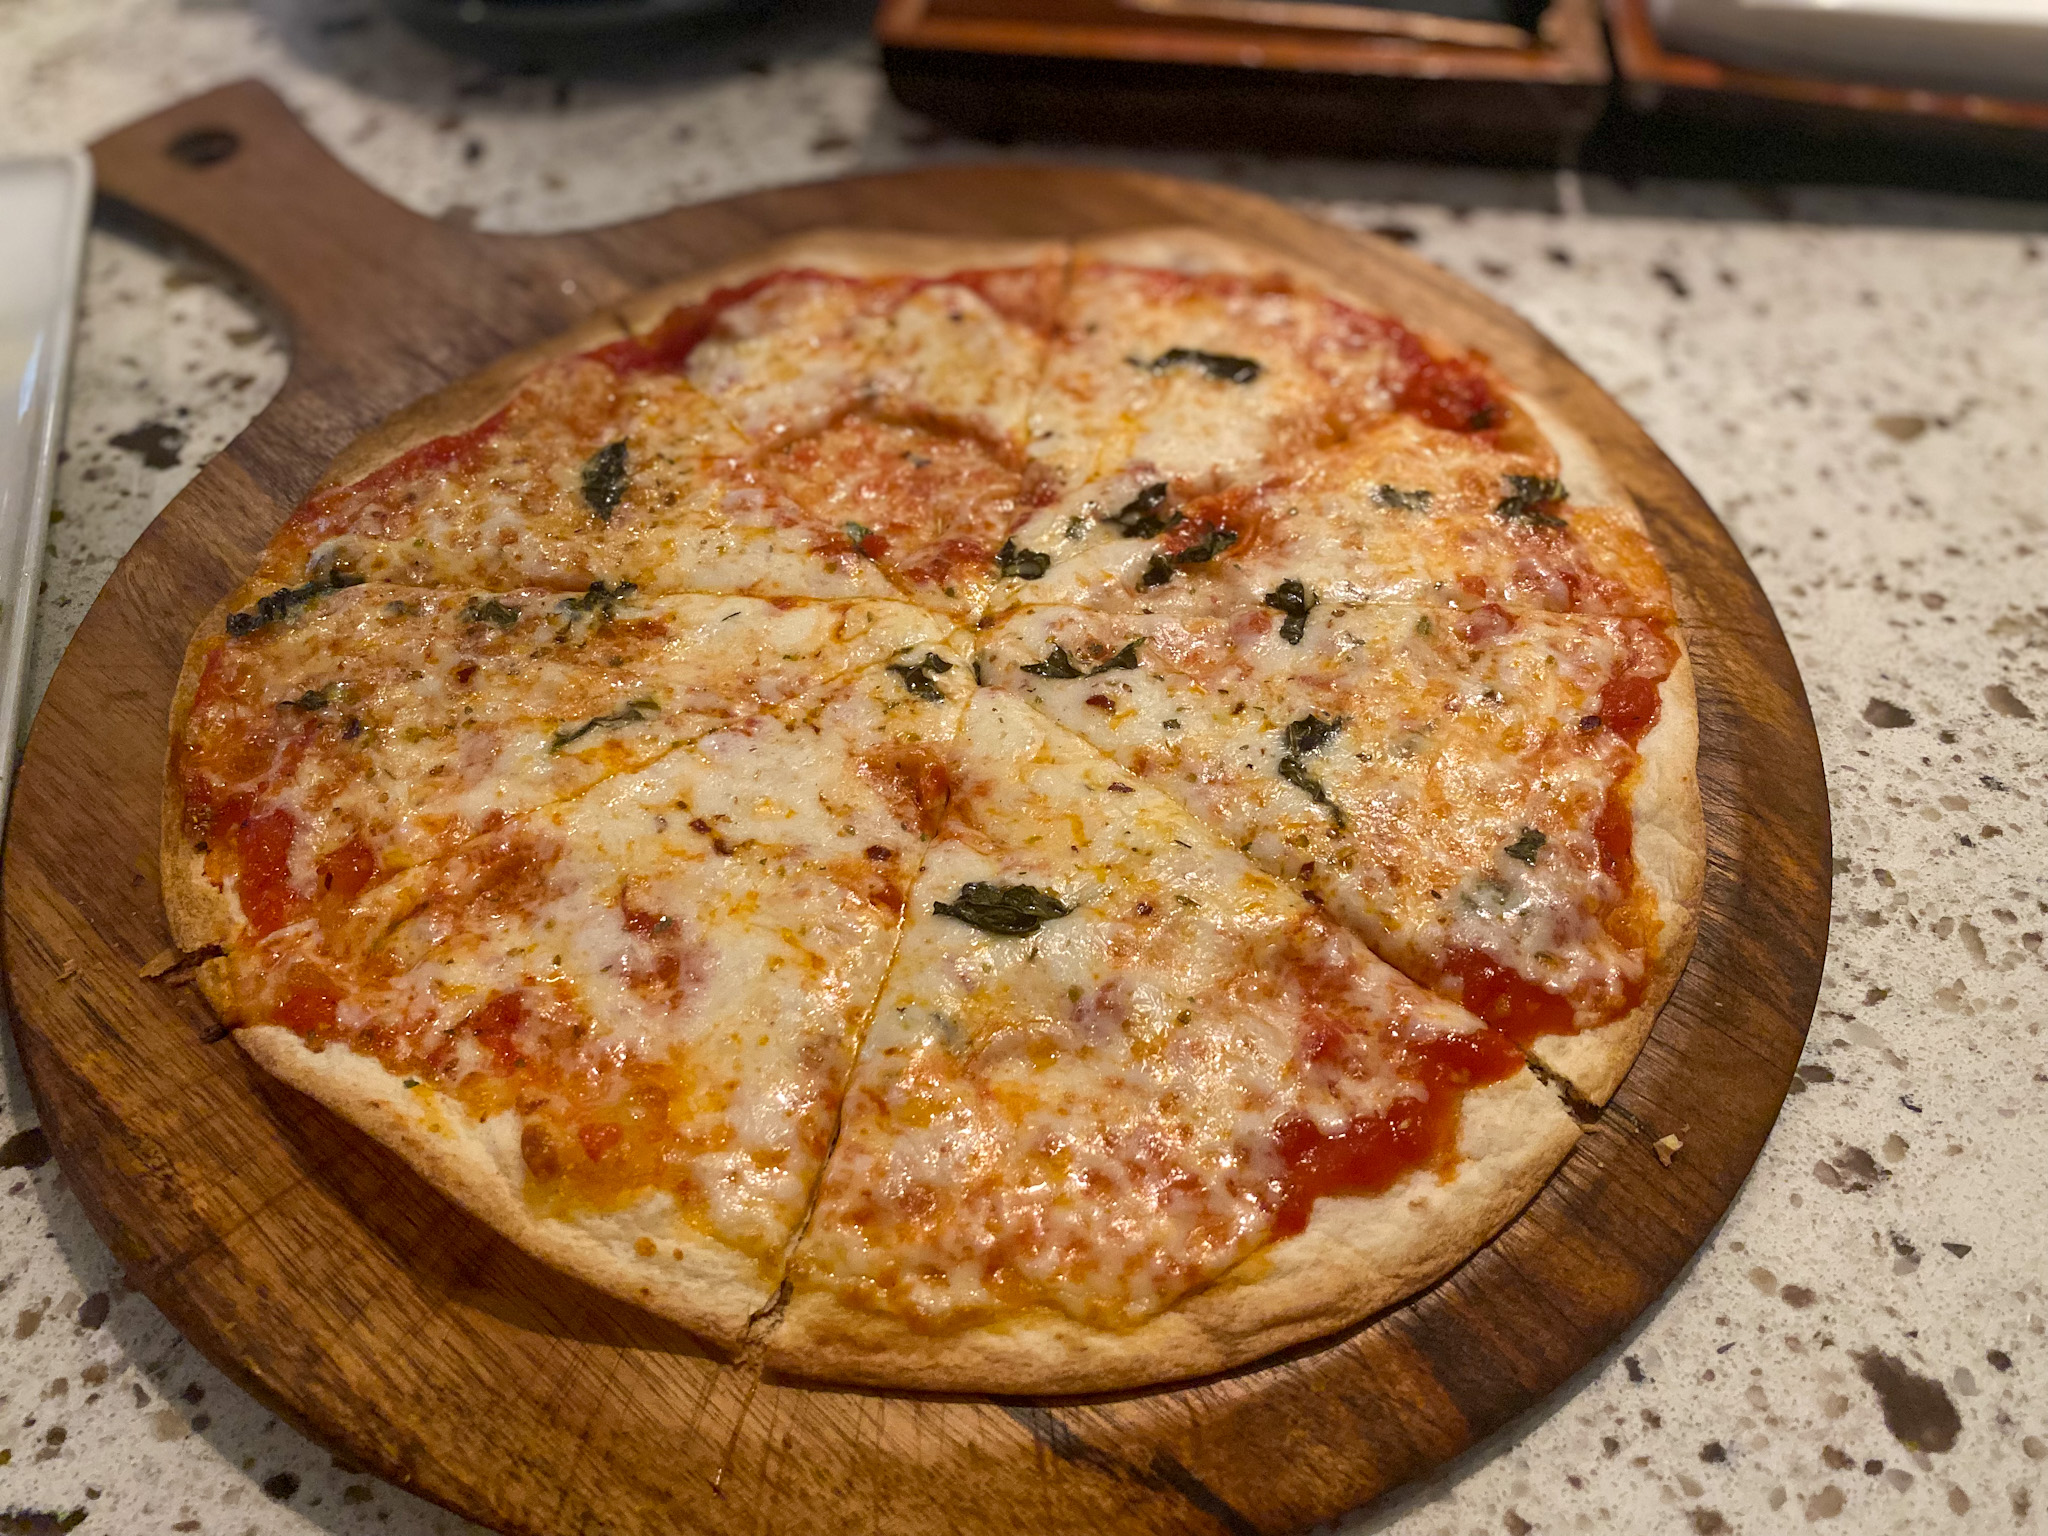 The Pizzeta